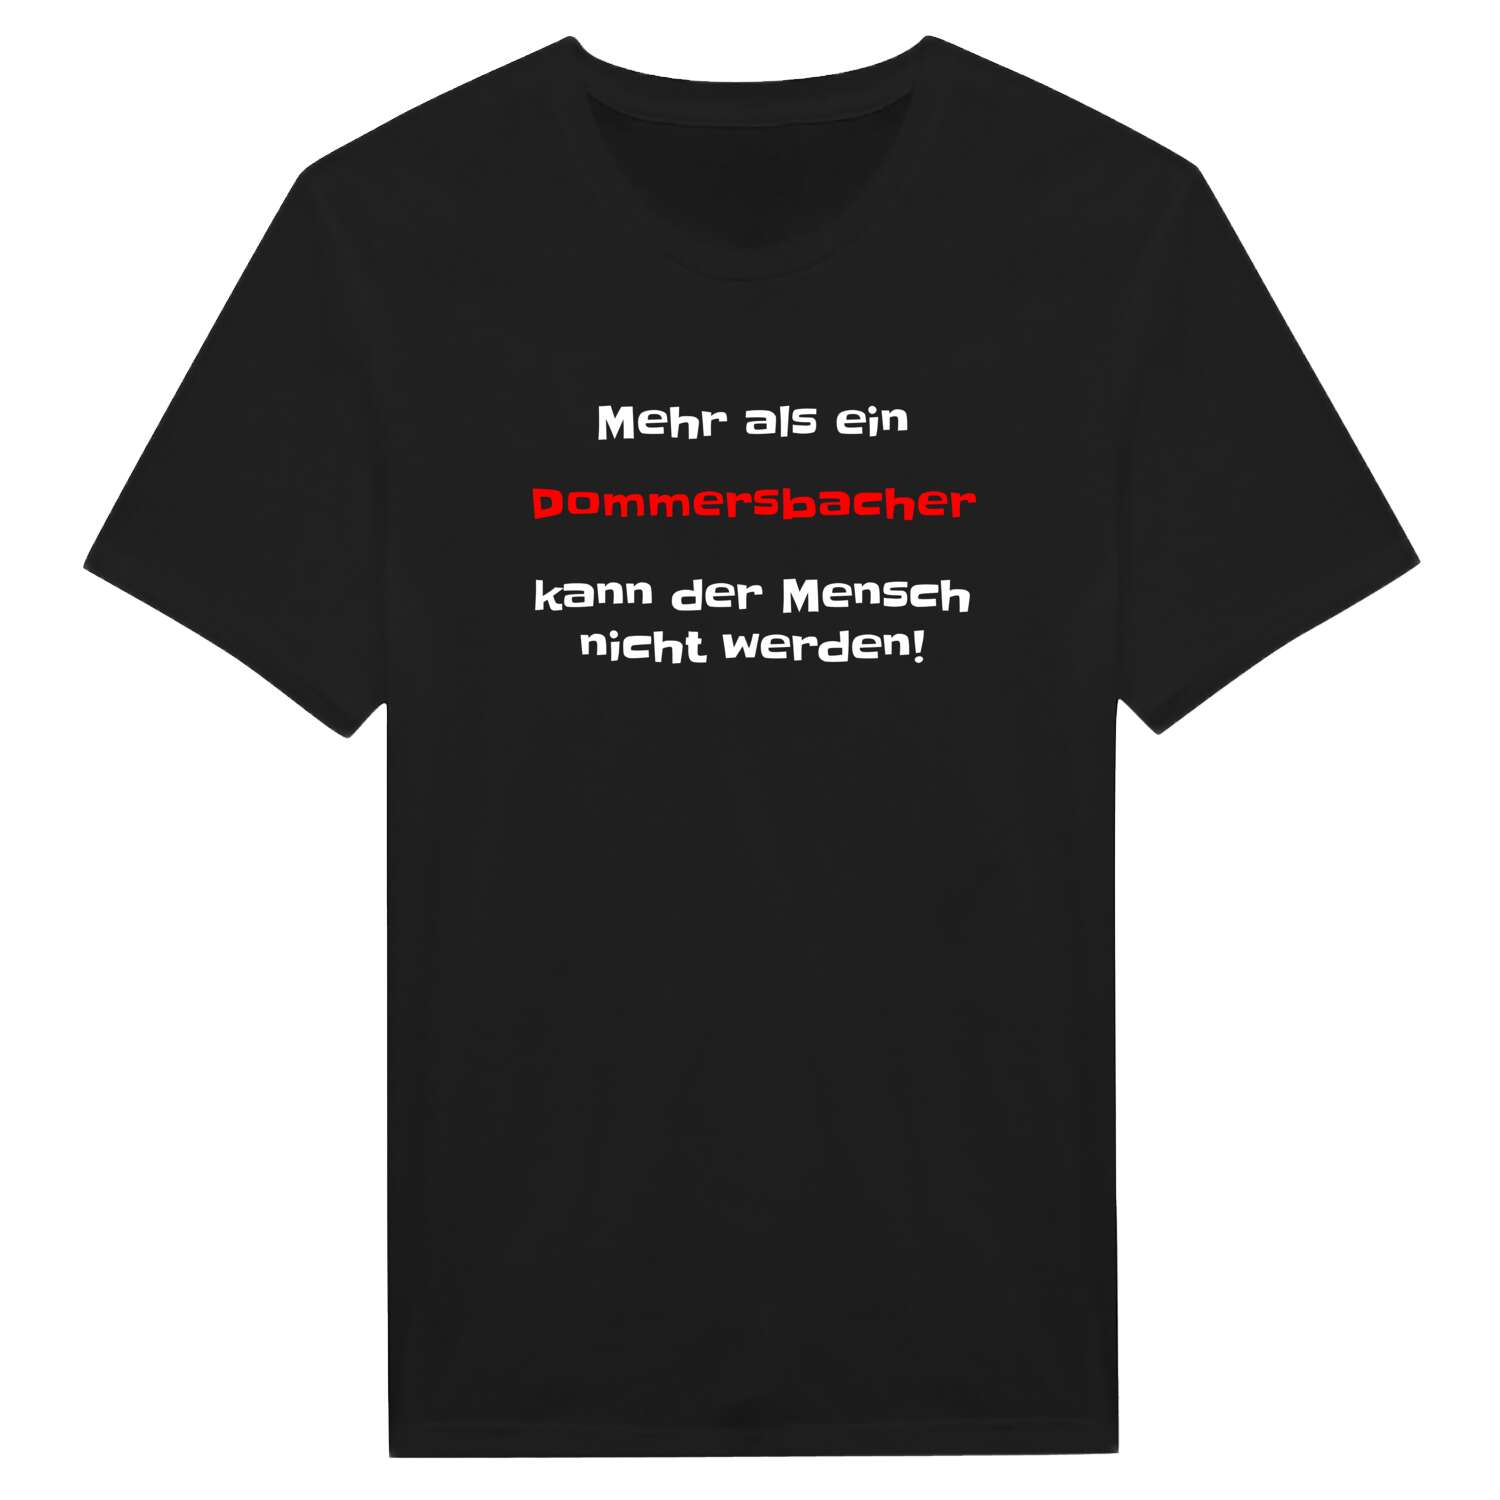 Dommersbach T-Shirt »Mehr als ein«